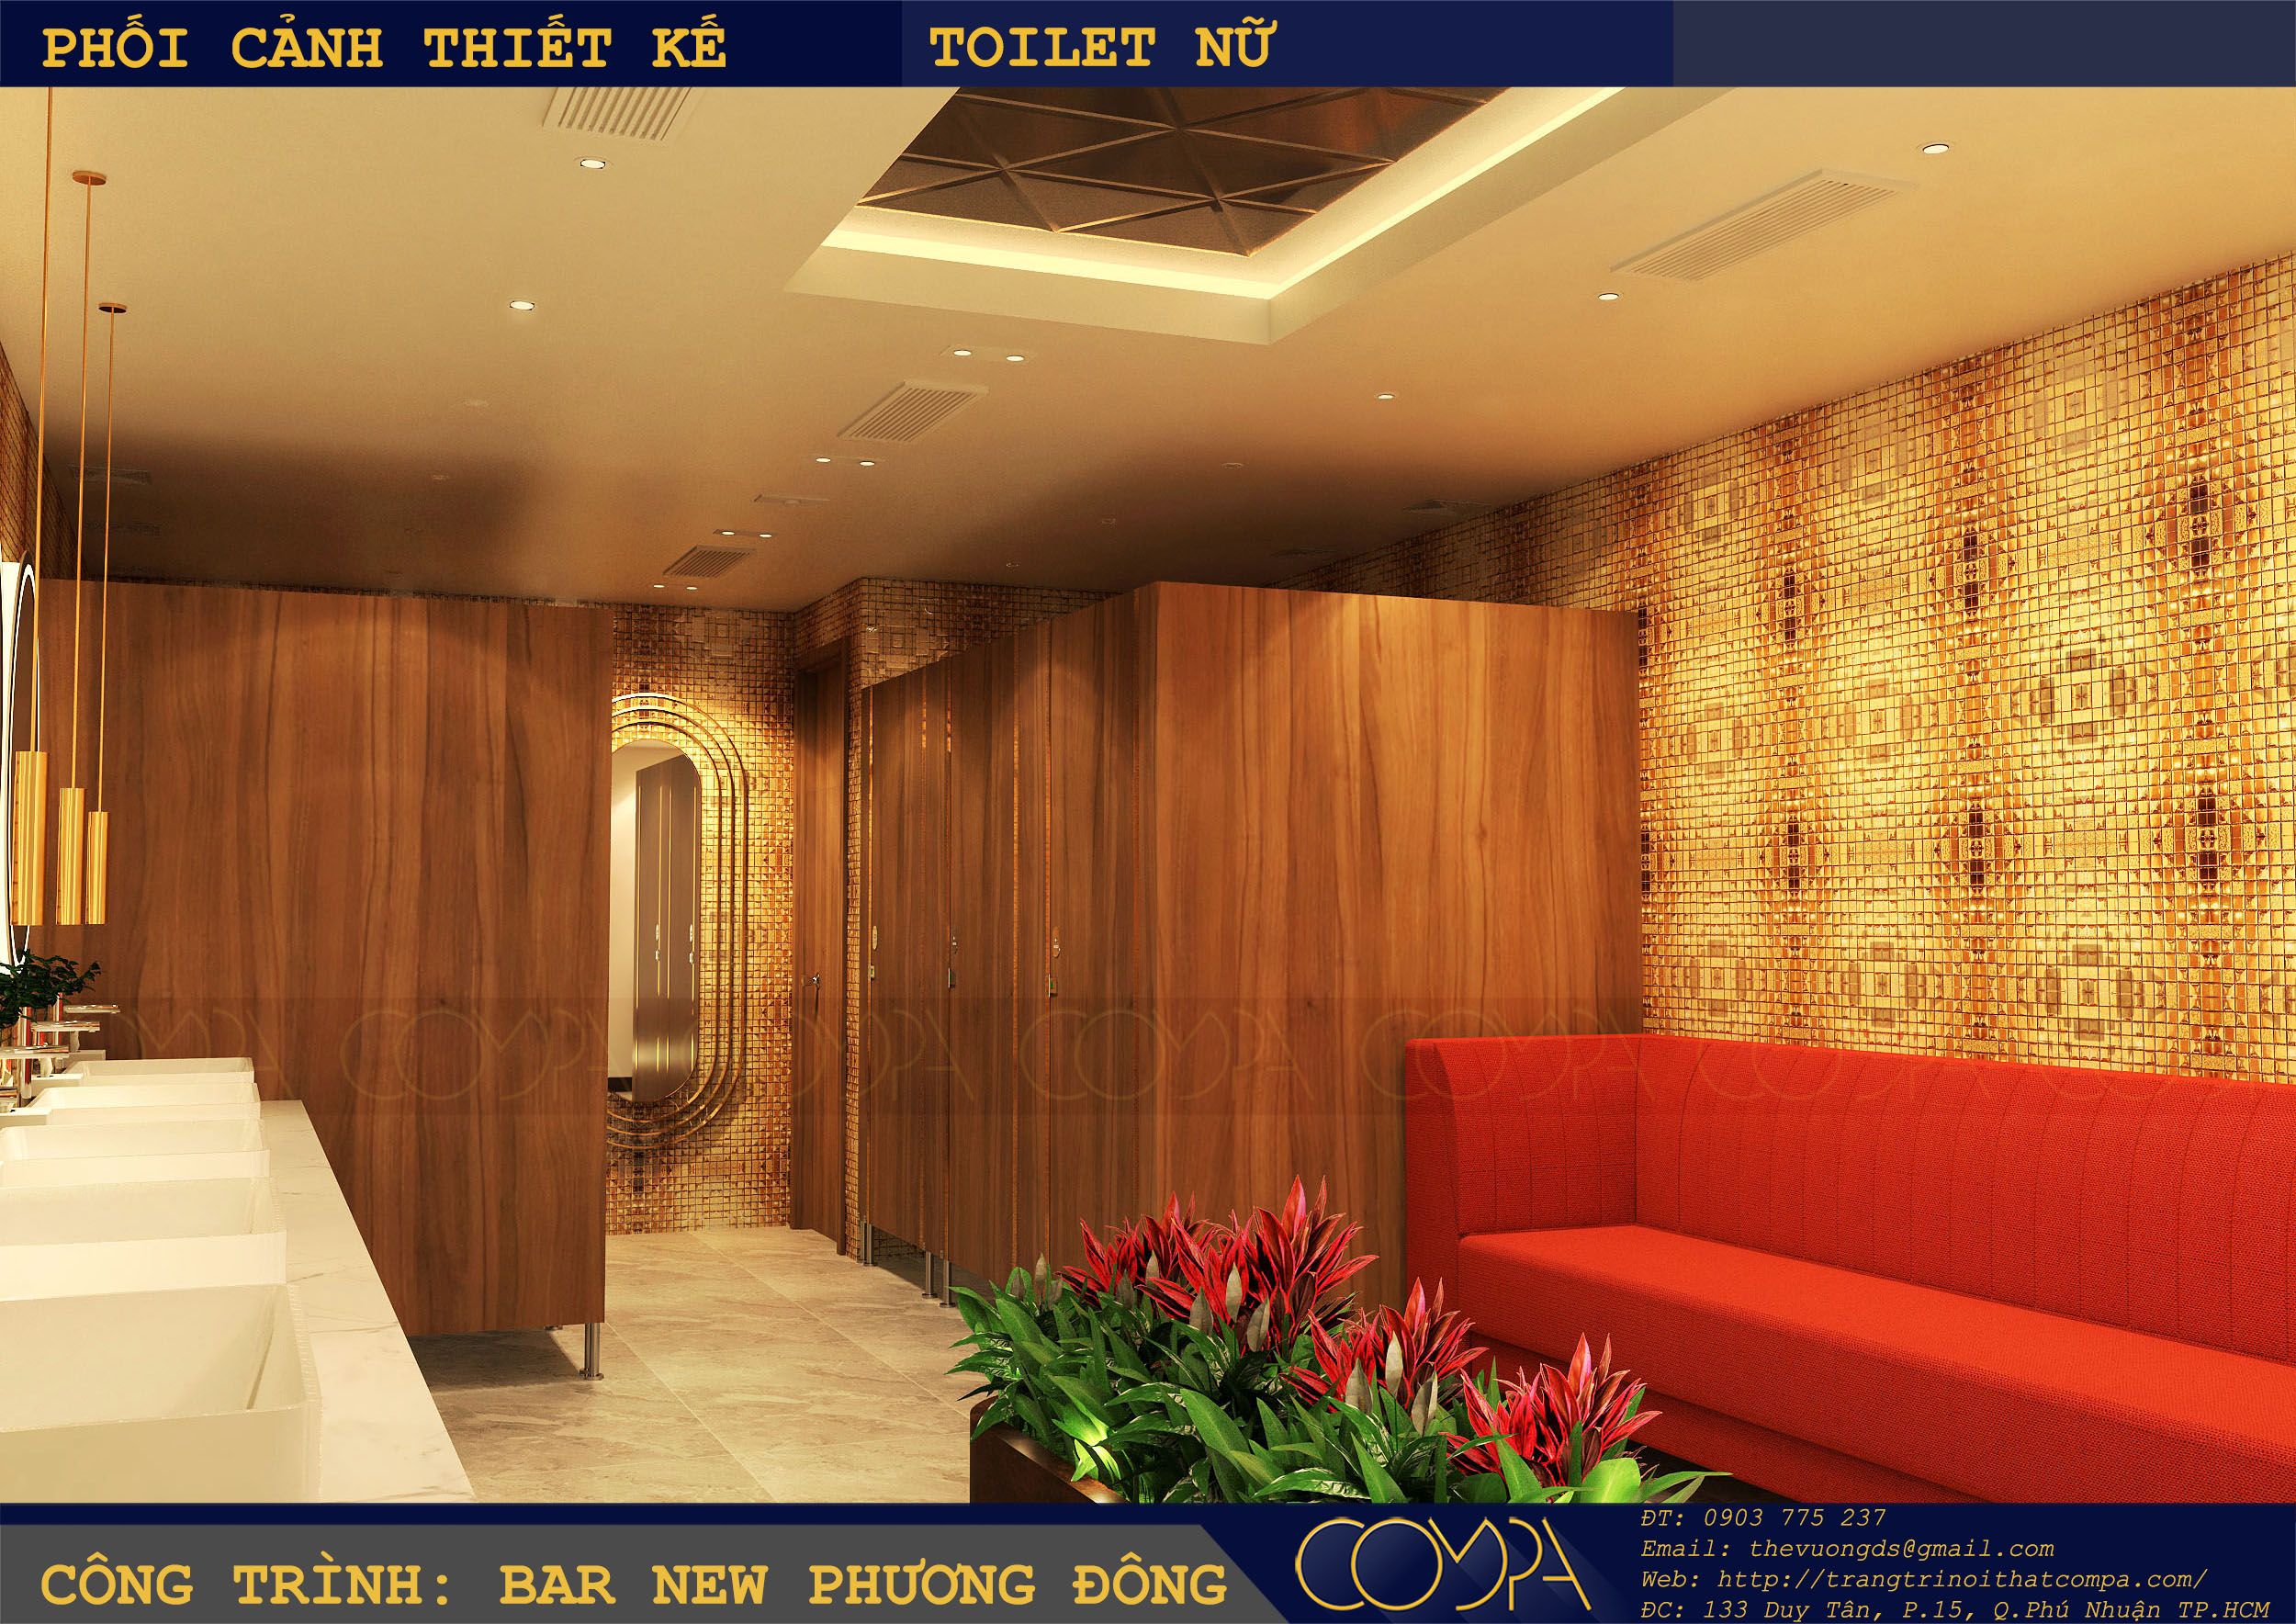 Mẫu thiết kế nhà vệ sinh sang trọng tại công trình Bar New Phương Đông